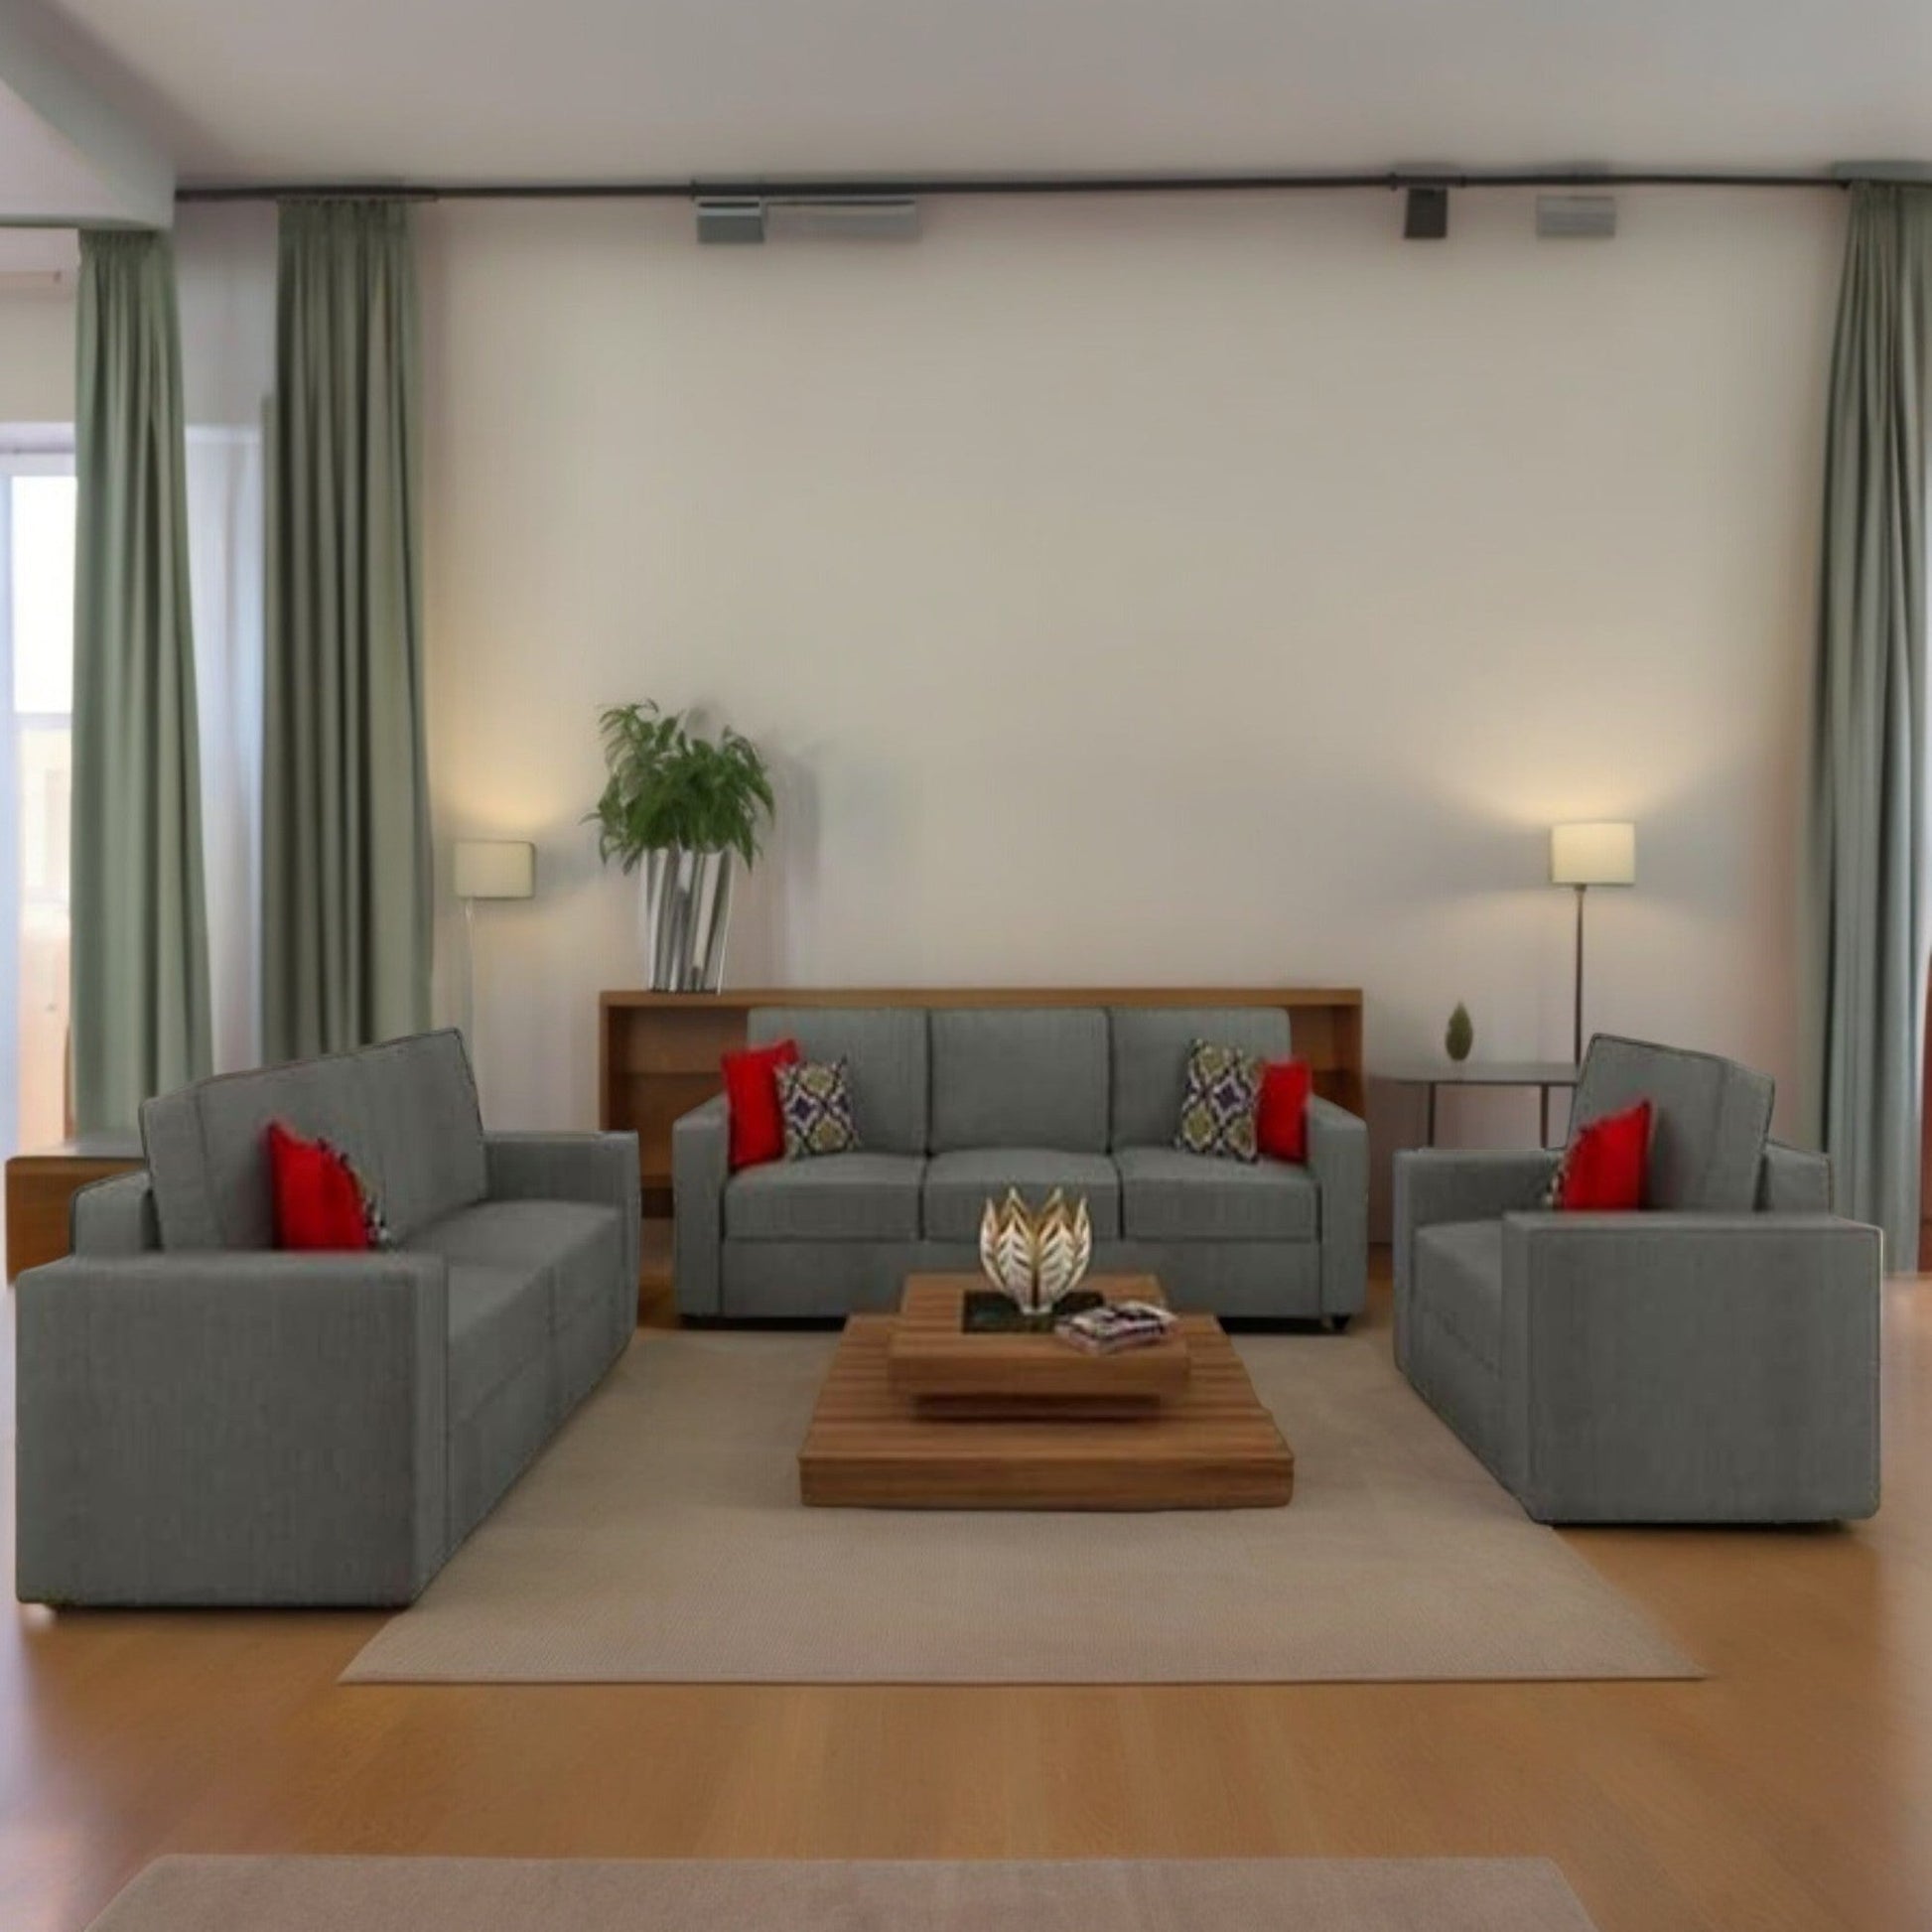 Carelino 3+2+1 Seater Fabric Sofa Set for Living Room - Torque India